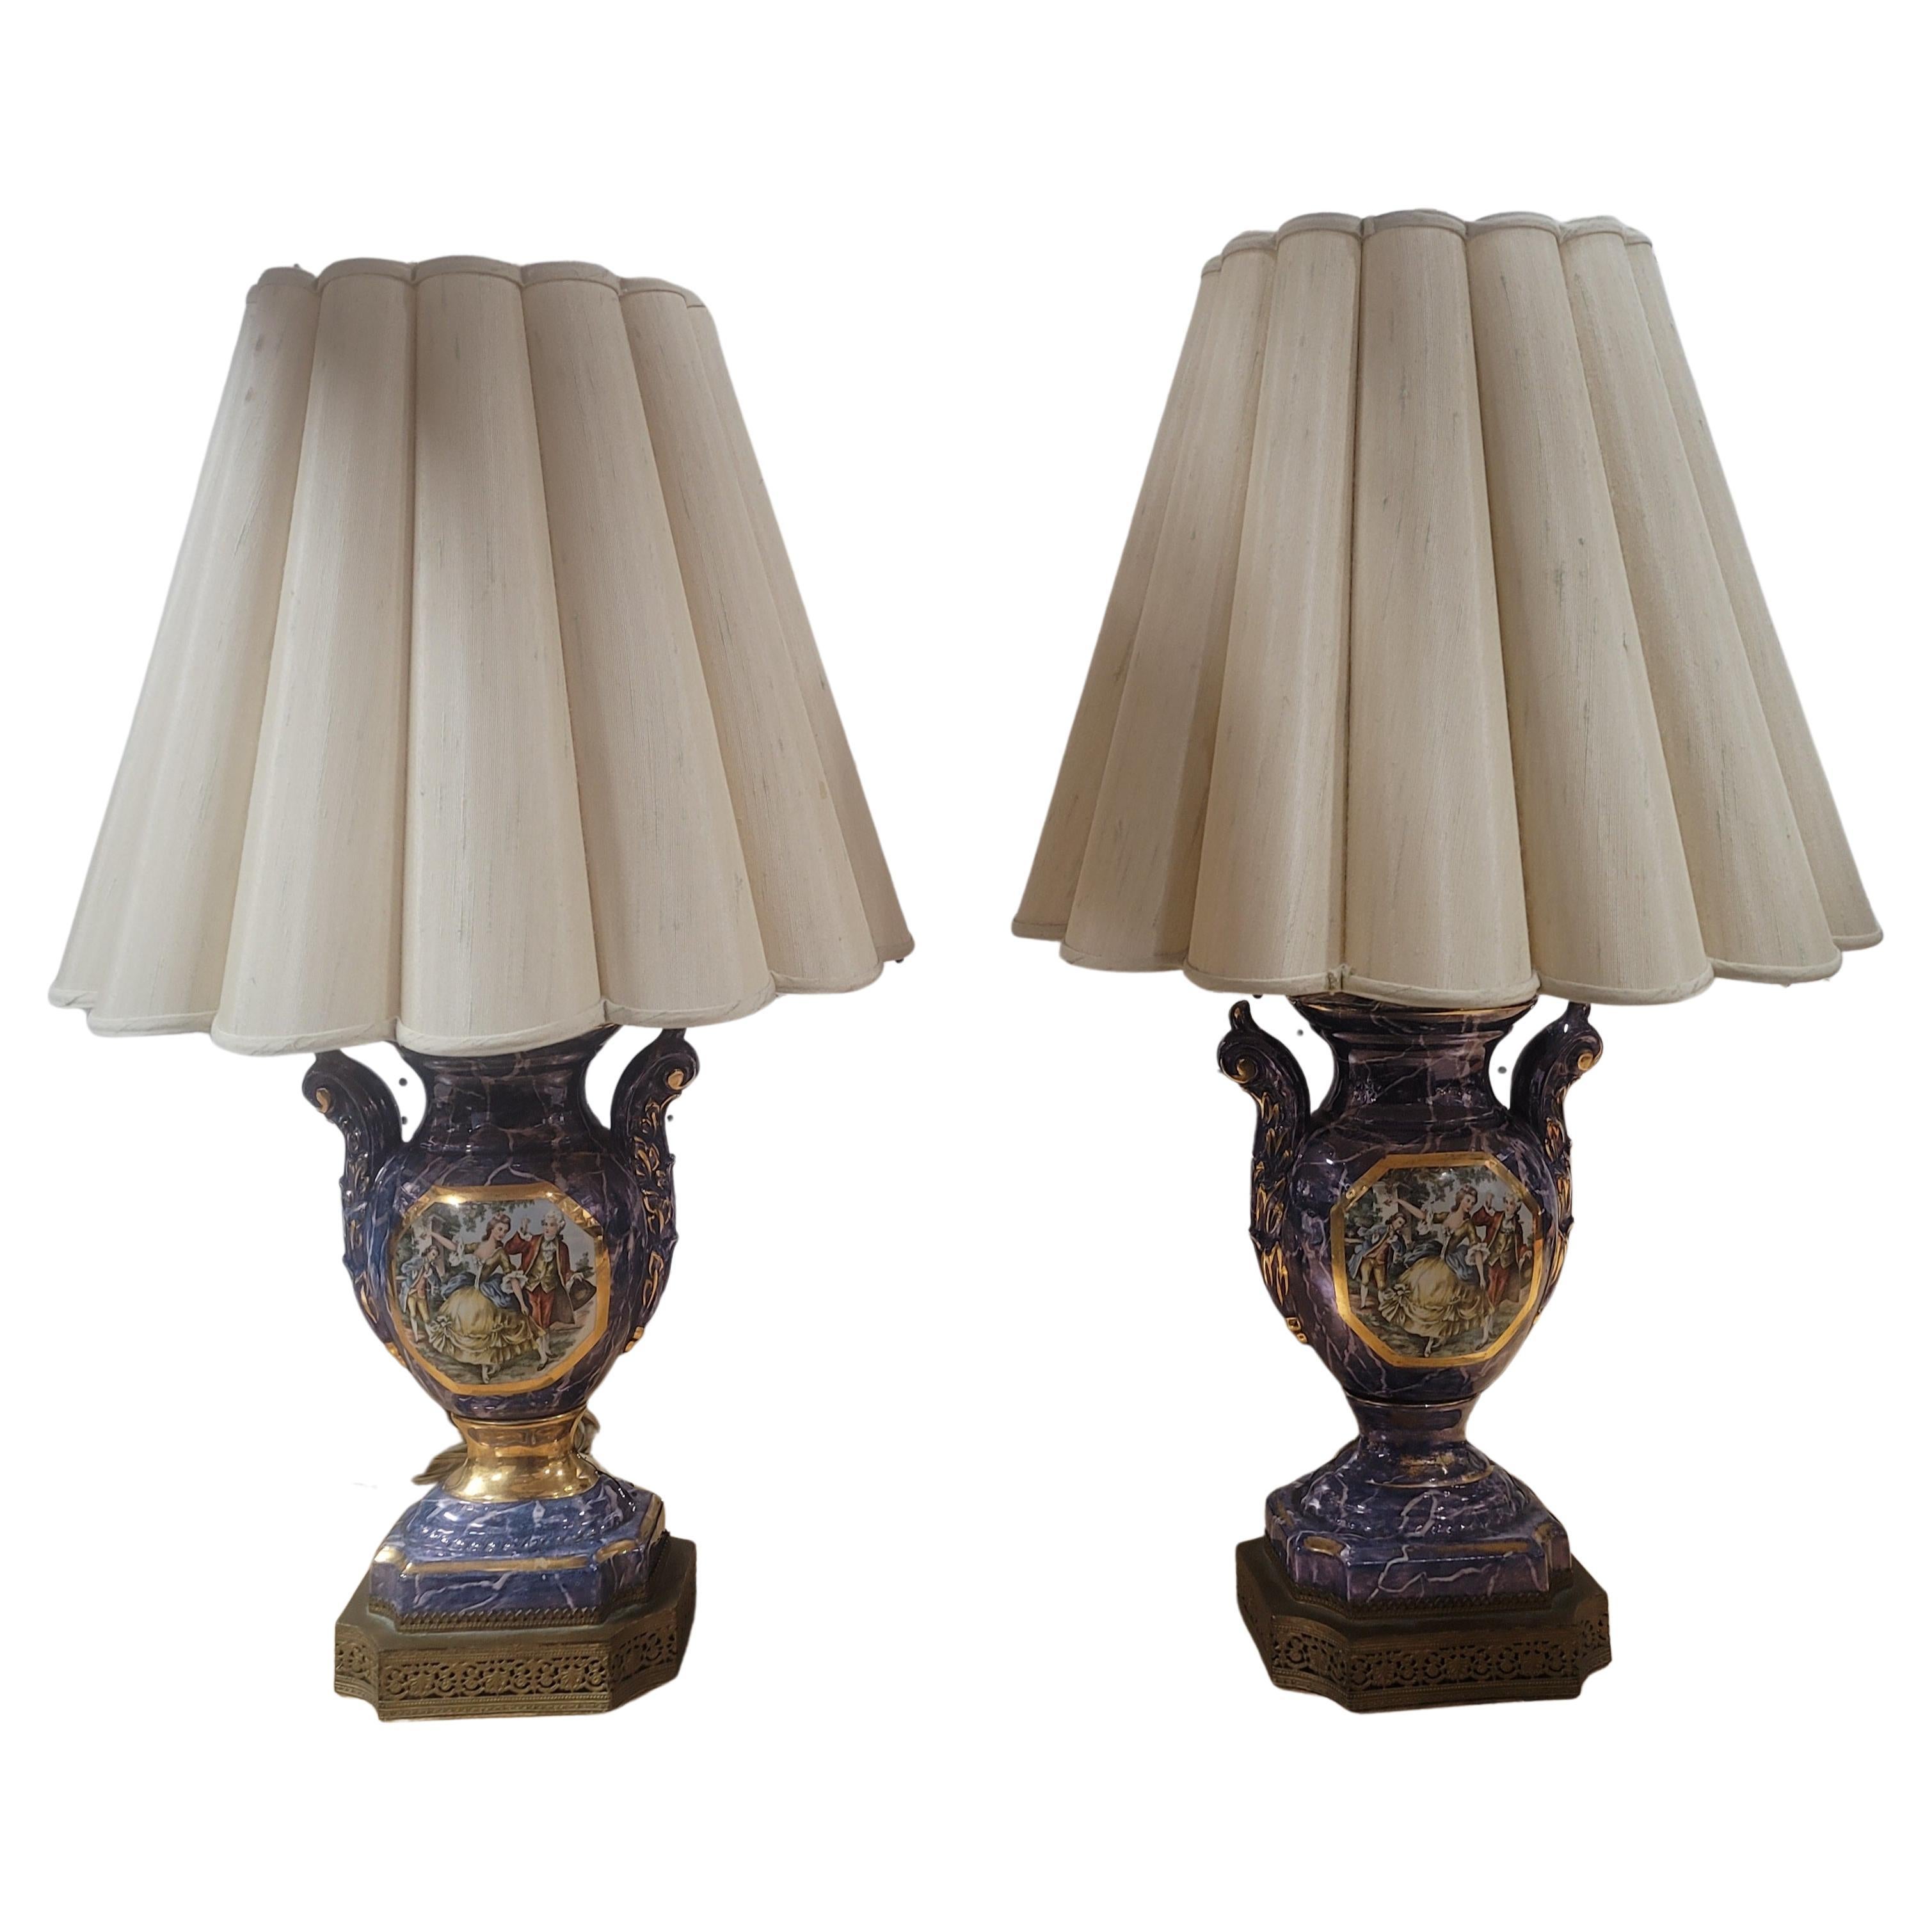 Ein elegantes Paar französischer Porzellanlampen im Louis-XVI-Stil des 19. Jahrhunderts. Jede Leuchte wird von einem gesprenkelten Sockel getragen, der mit einer fein verzierten Messingumwicklung verziert ist. Über den sockelförmigen Sockeln sind